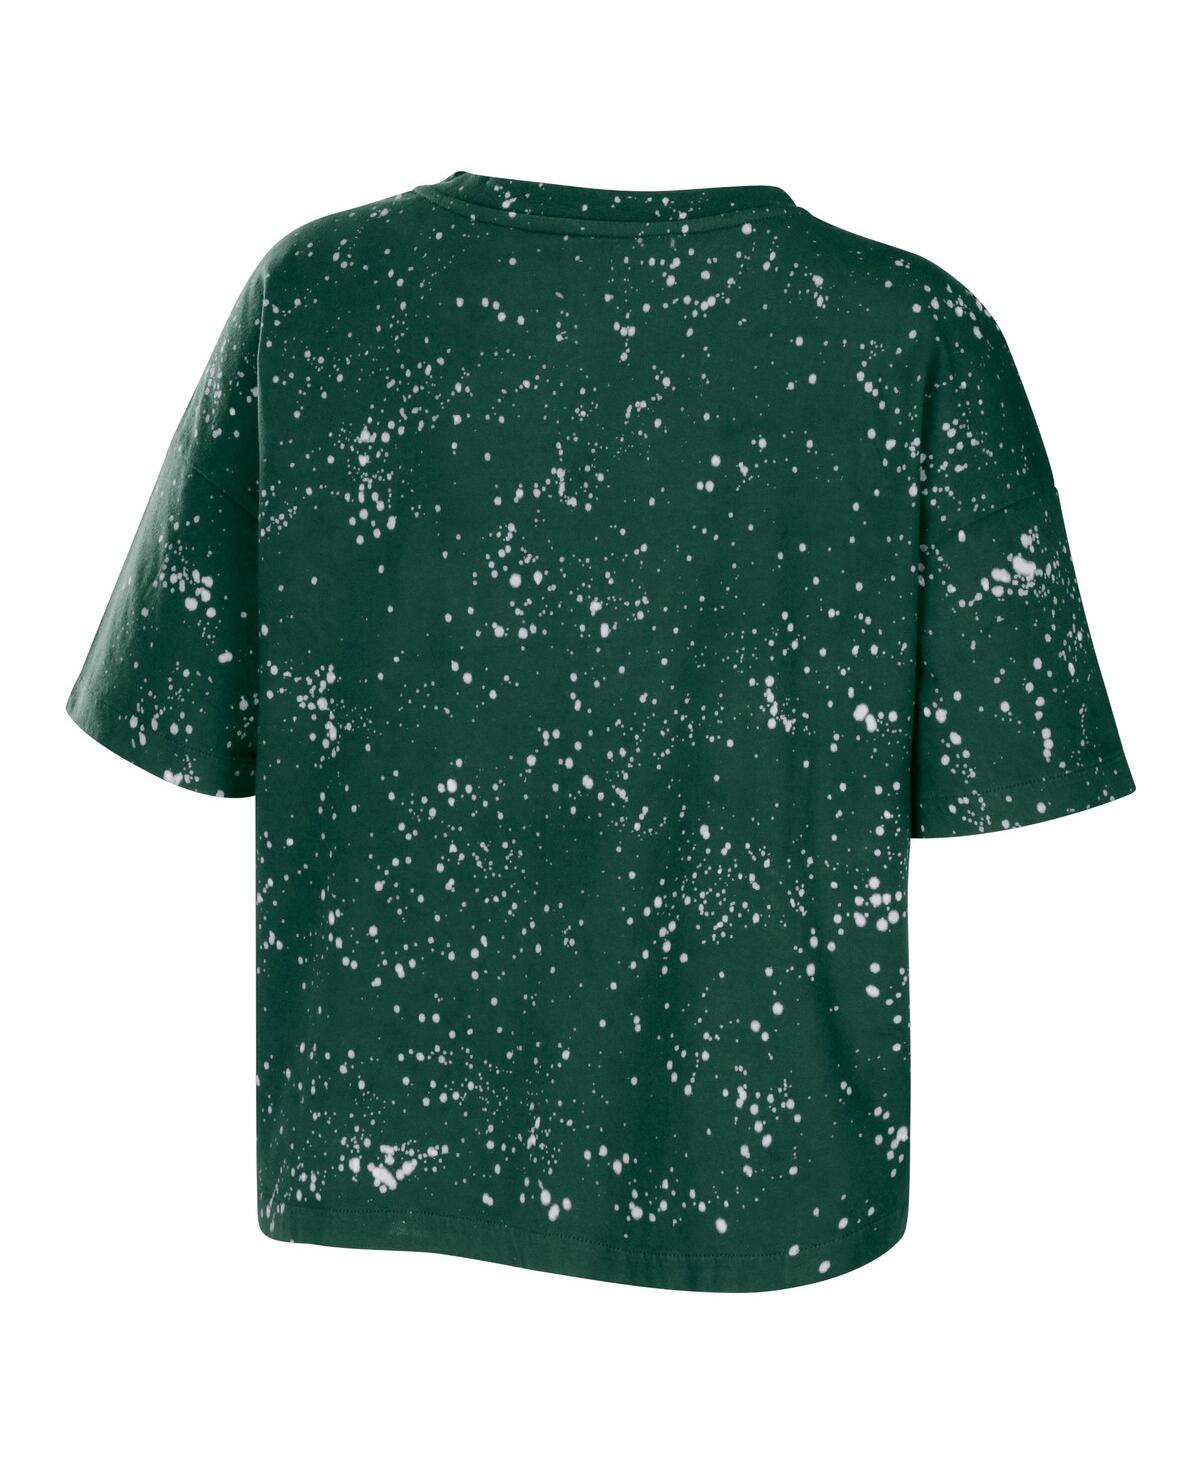 Shop Wear By Erin Andrews Women's  Green Oakland Athletics Notch Neck Tie-dye T-shirt